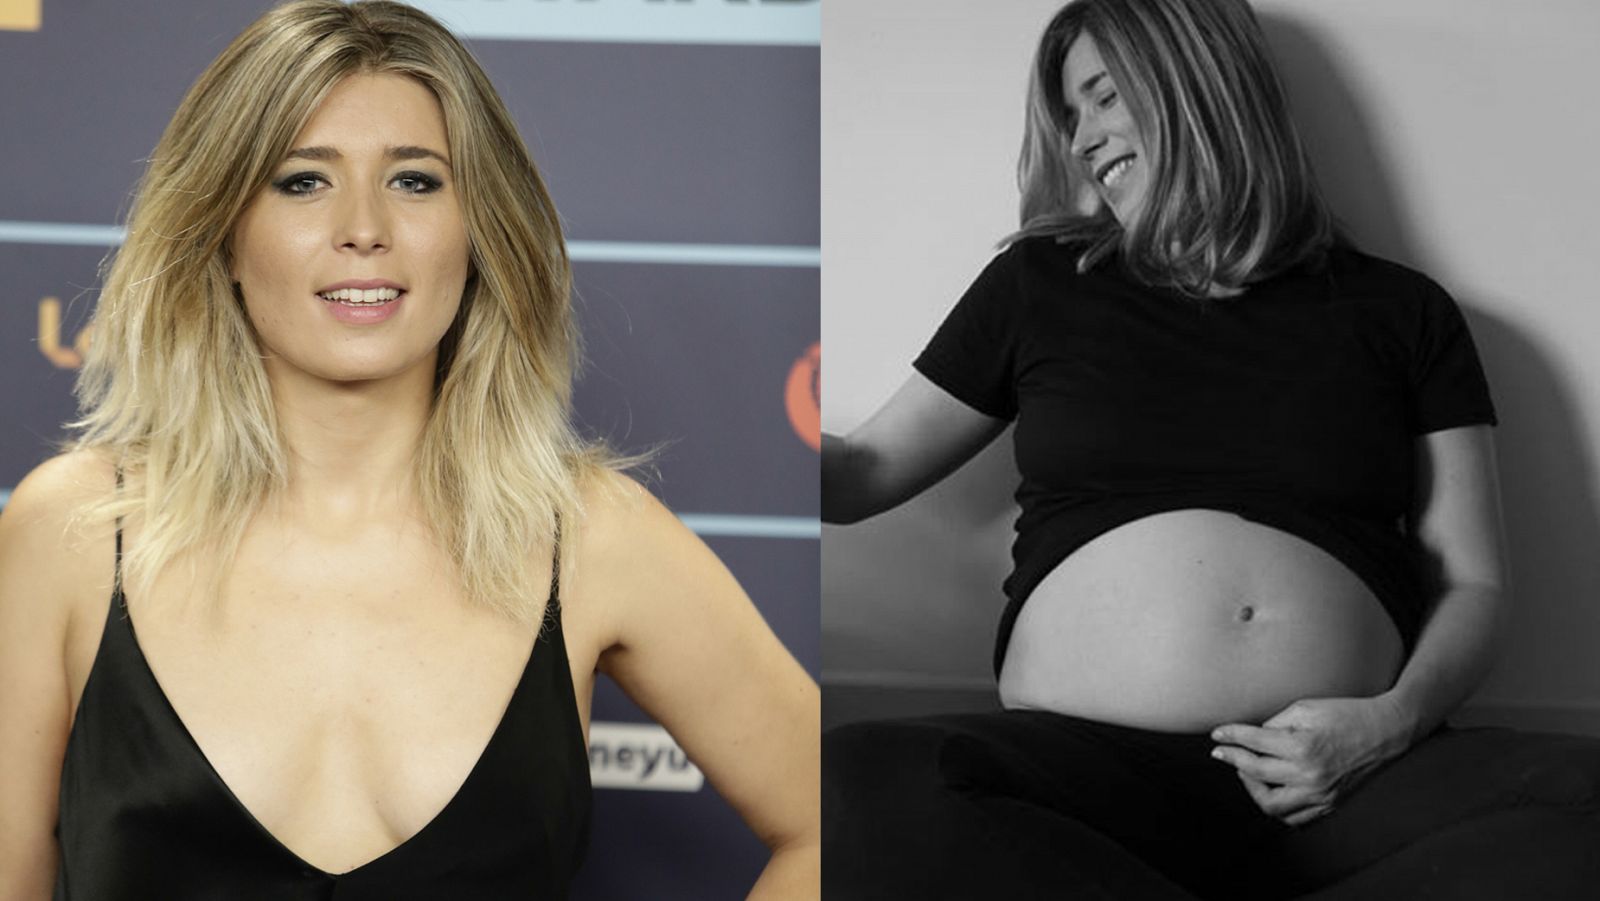  La presentadora de radio Cristina Boscá, embarazada por segunda vez